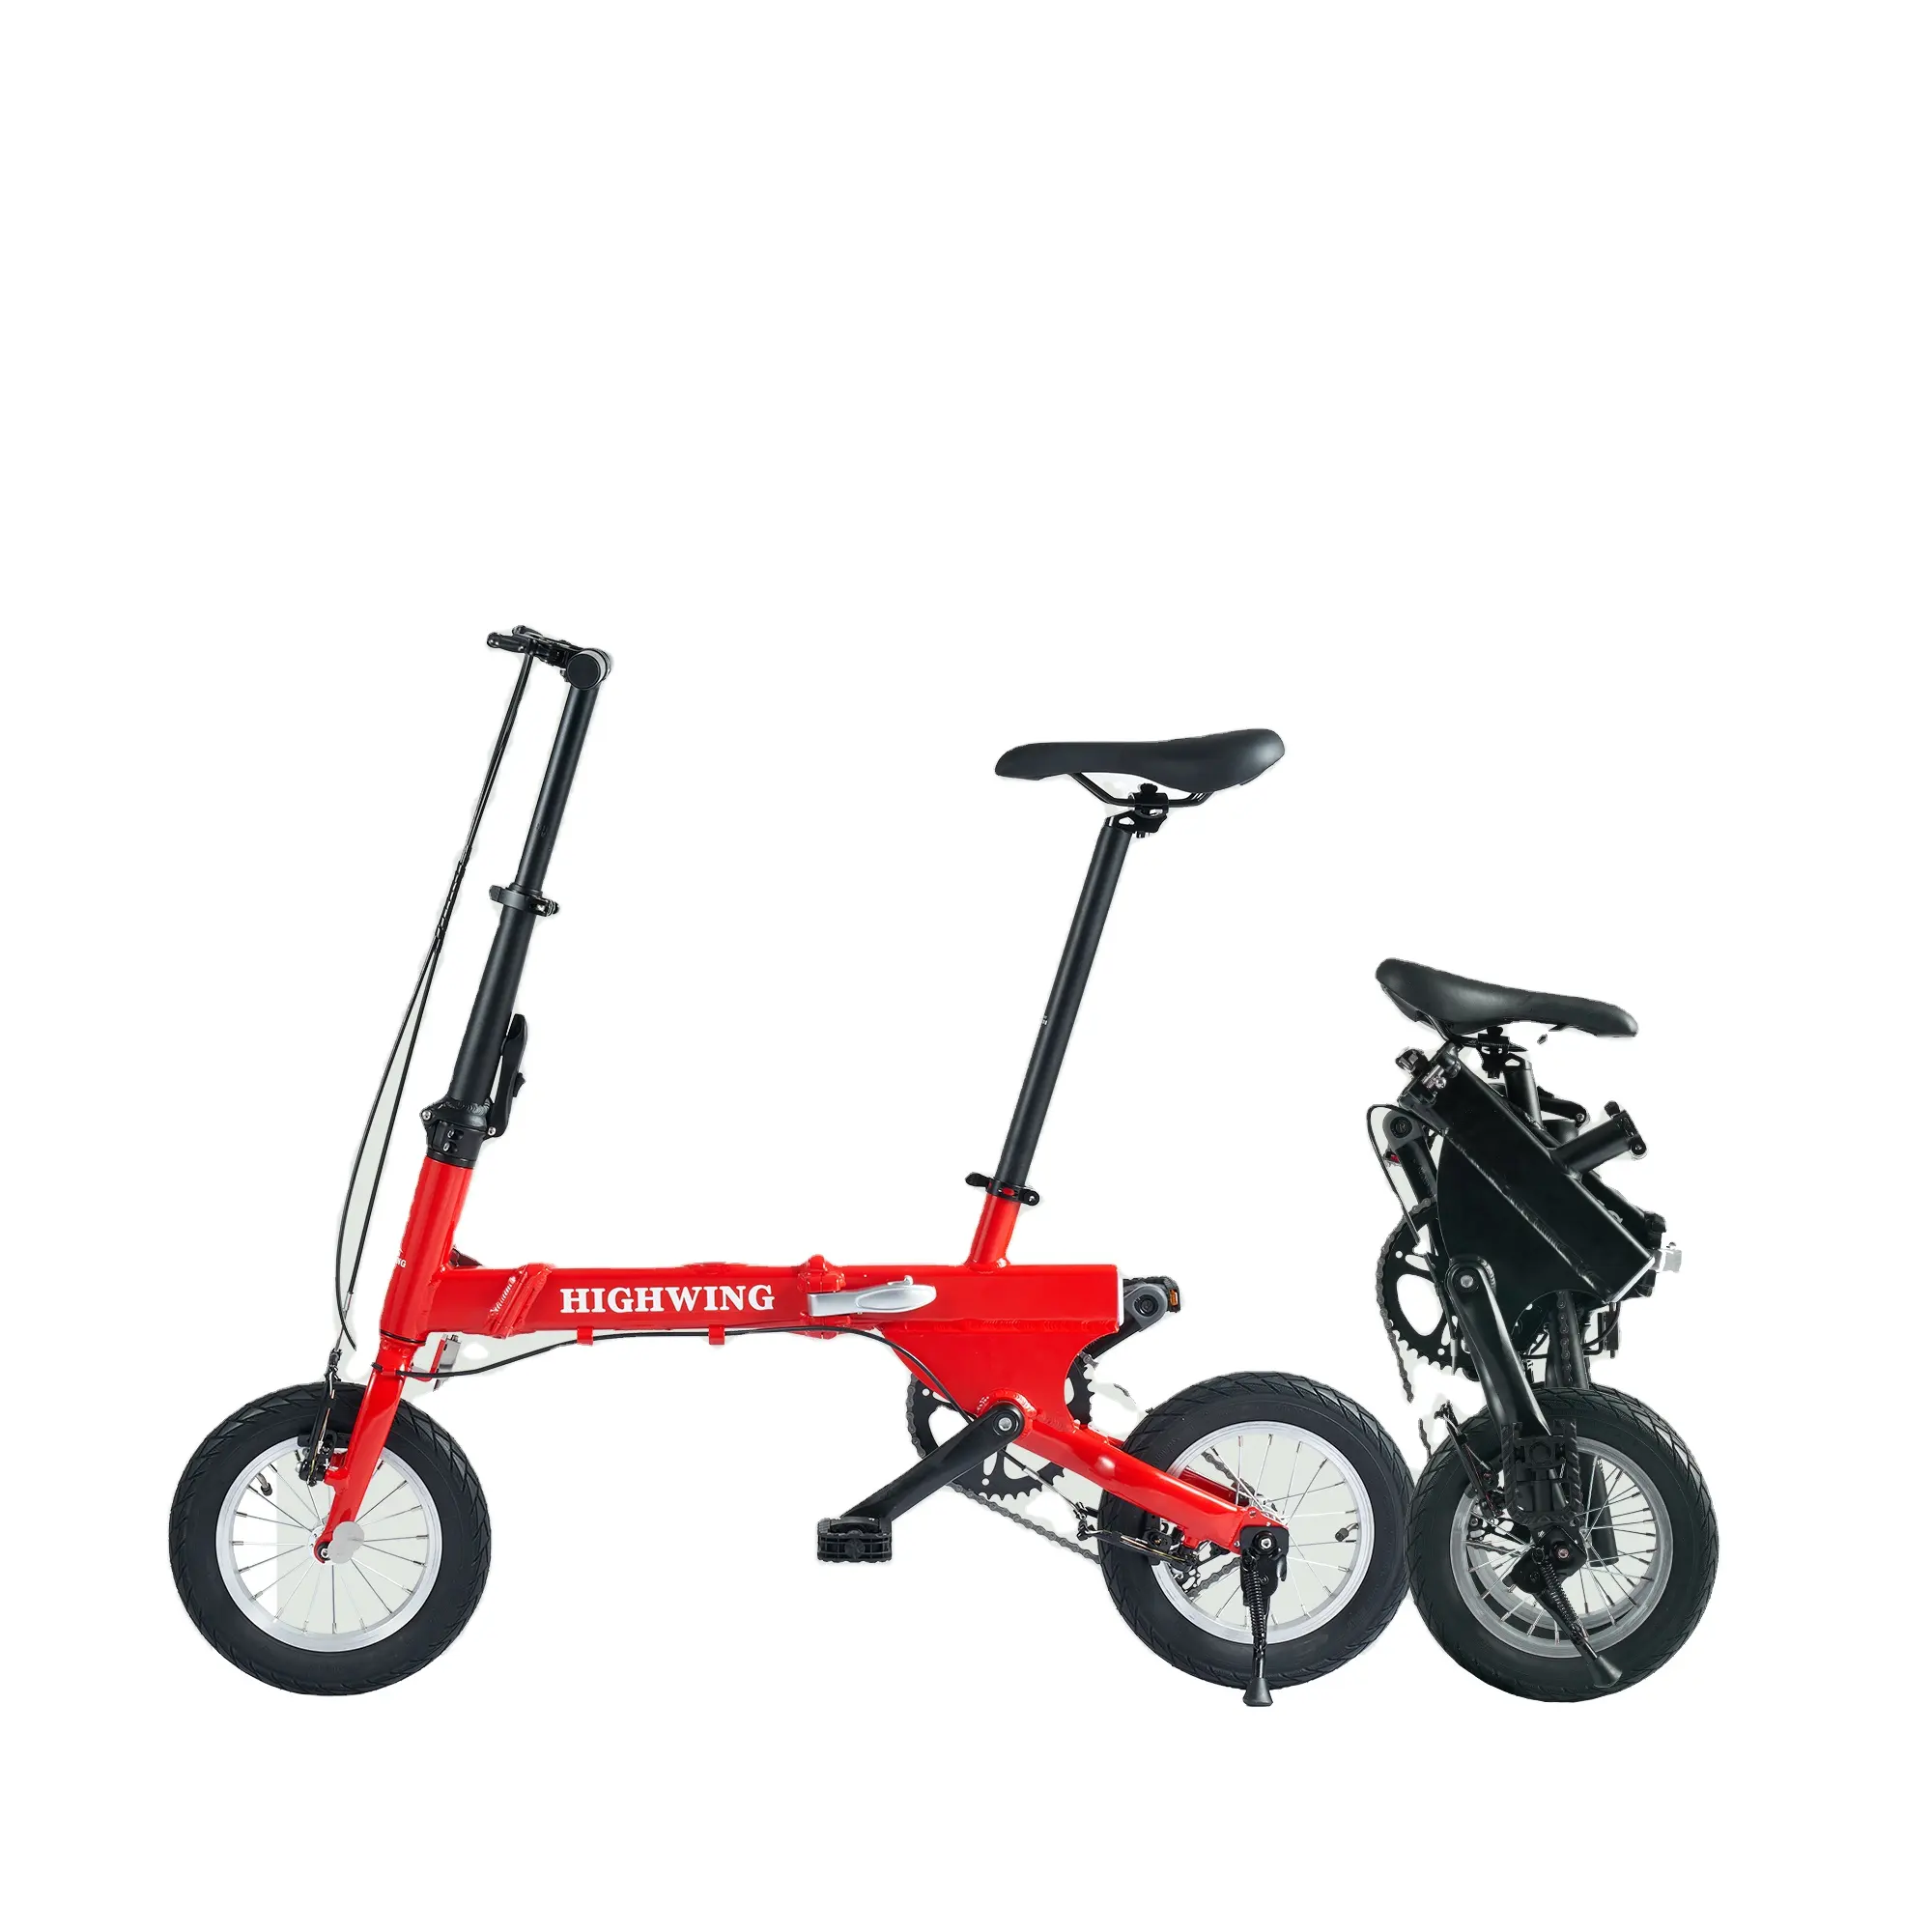 Highwing 12 14 pouces rouge blanc bleu vélo pas cher pour enfants enfant fille enfants enfants prix compétitif vélo vélo